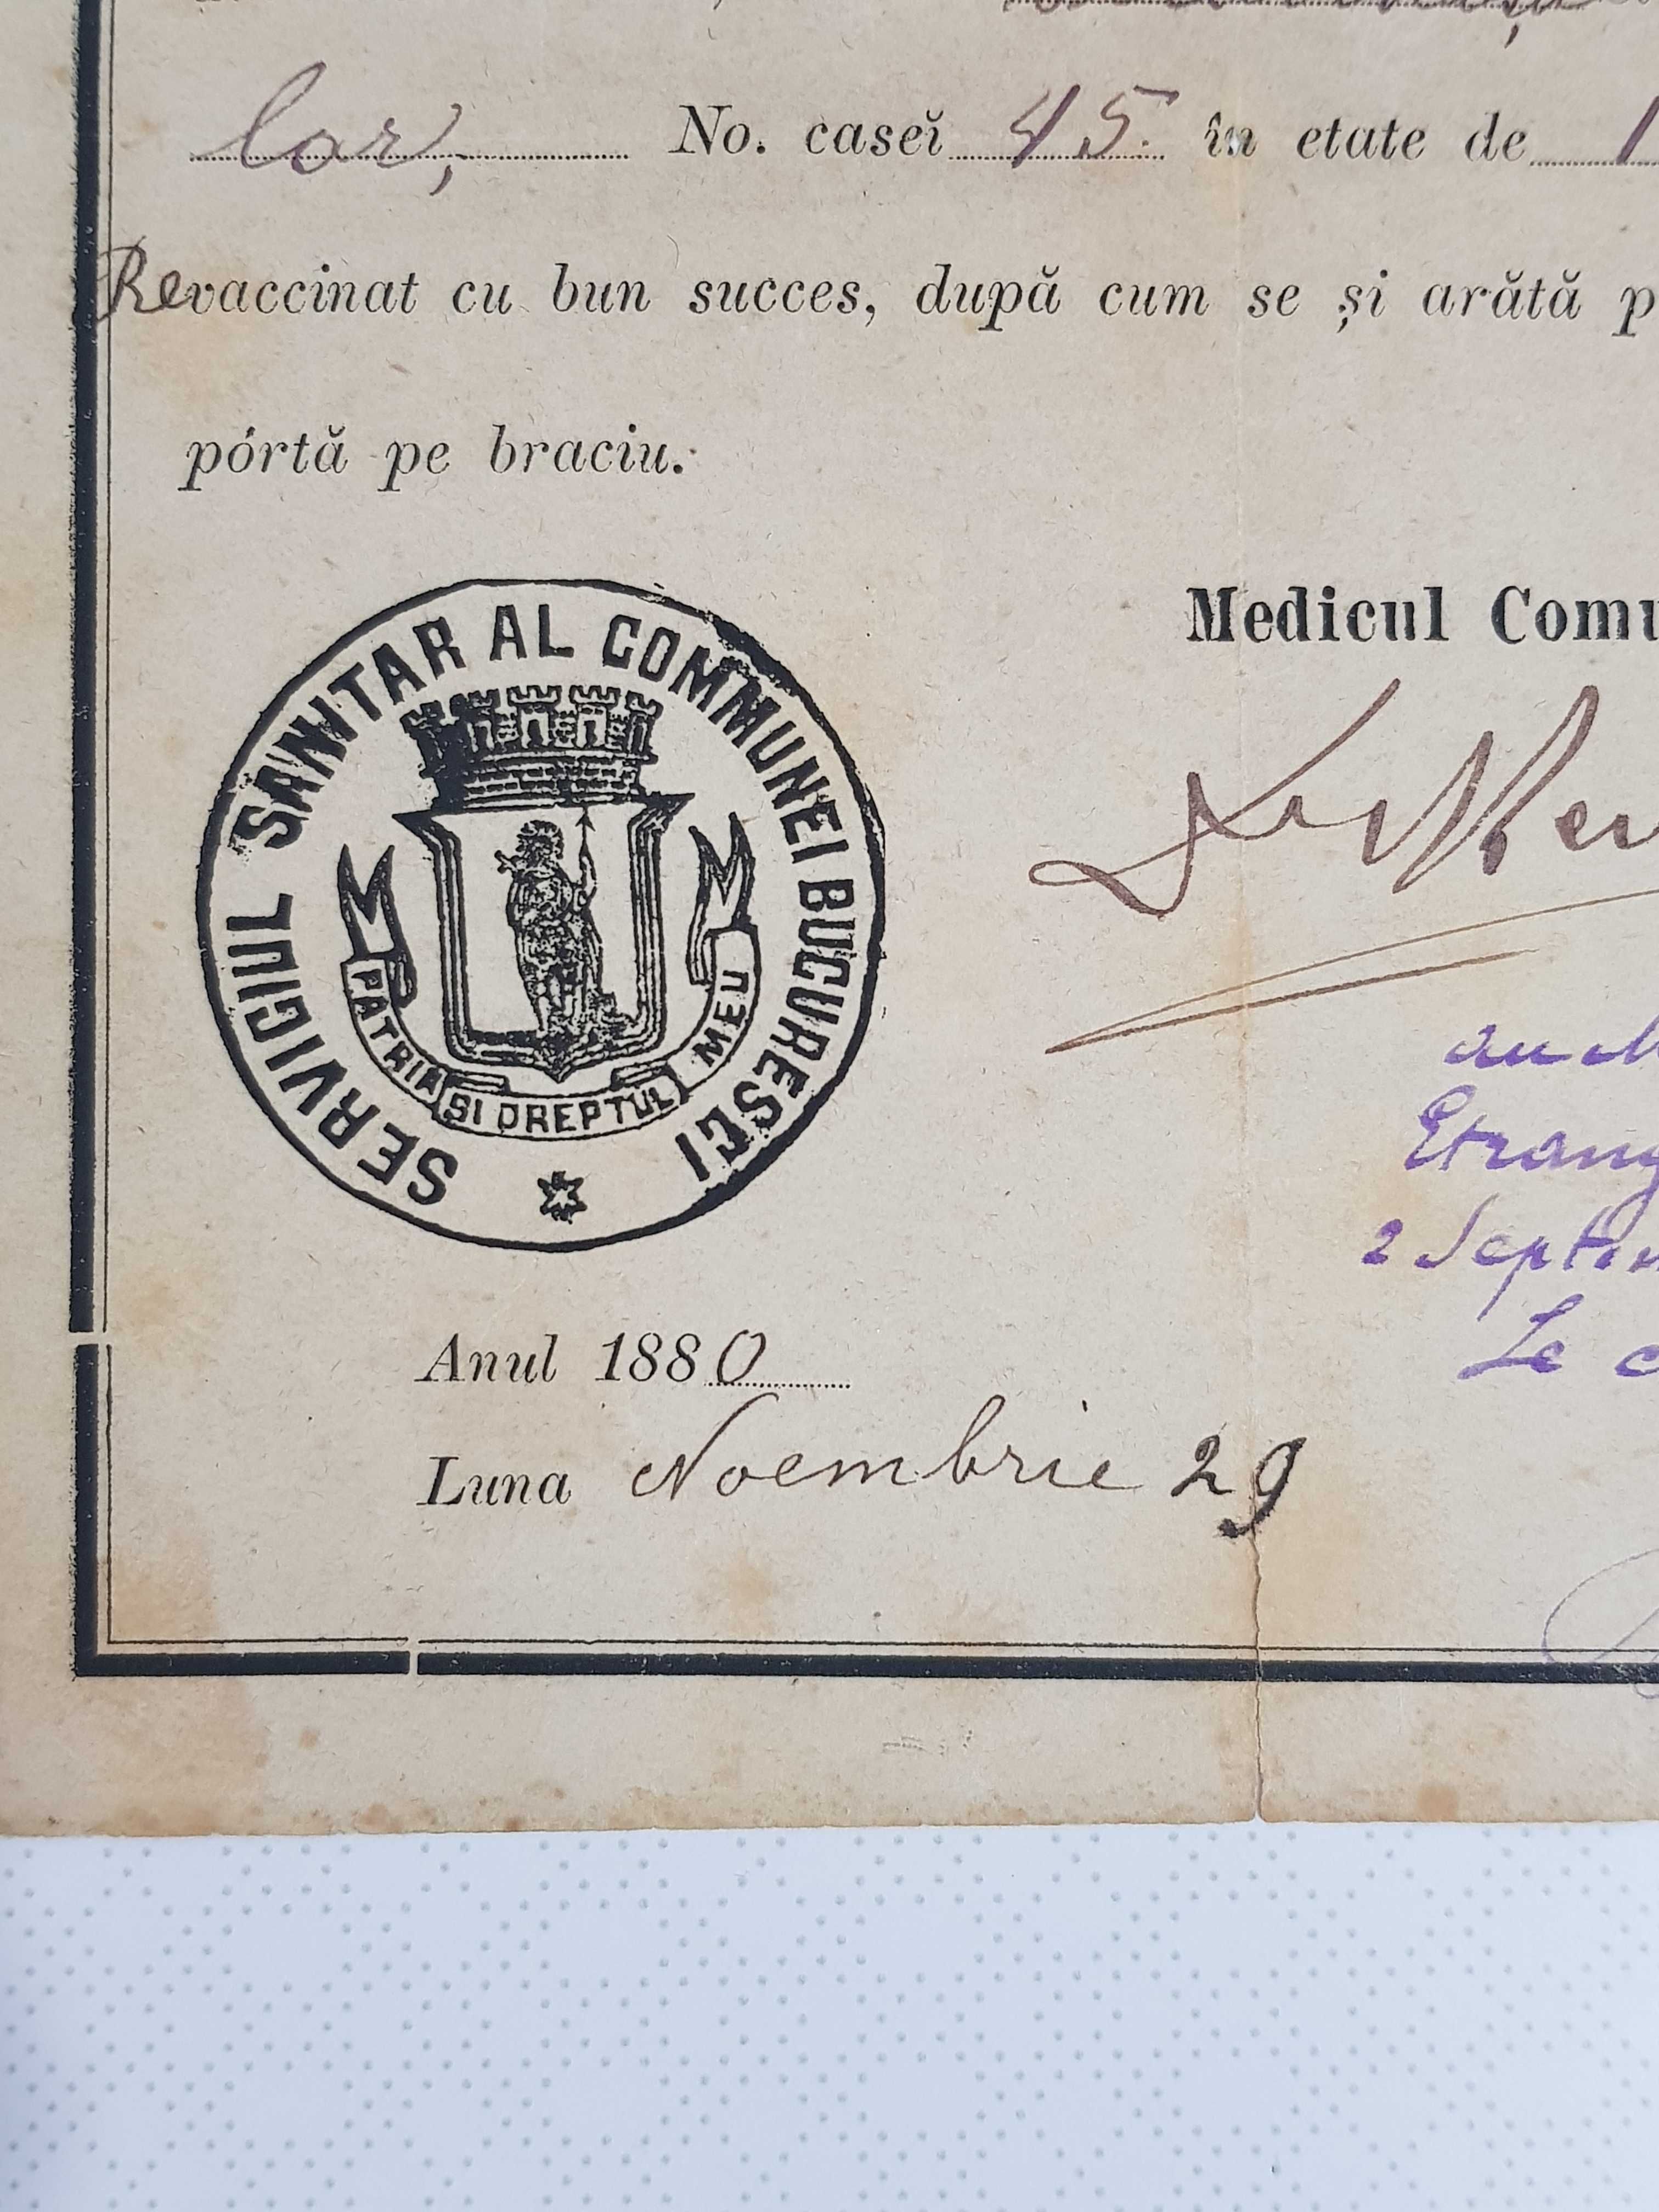 Bilet de vaccinare 1880 comuna Bucuresci